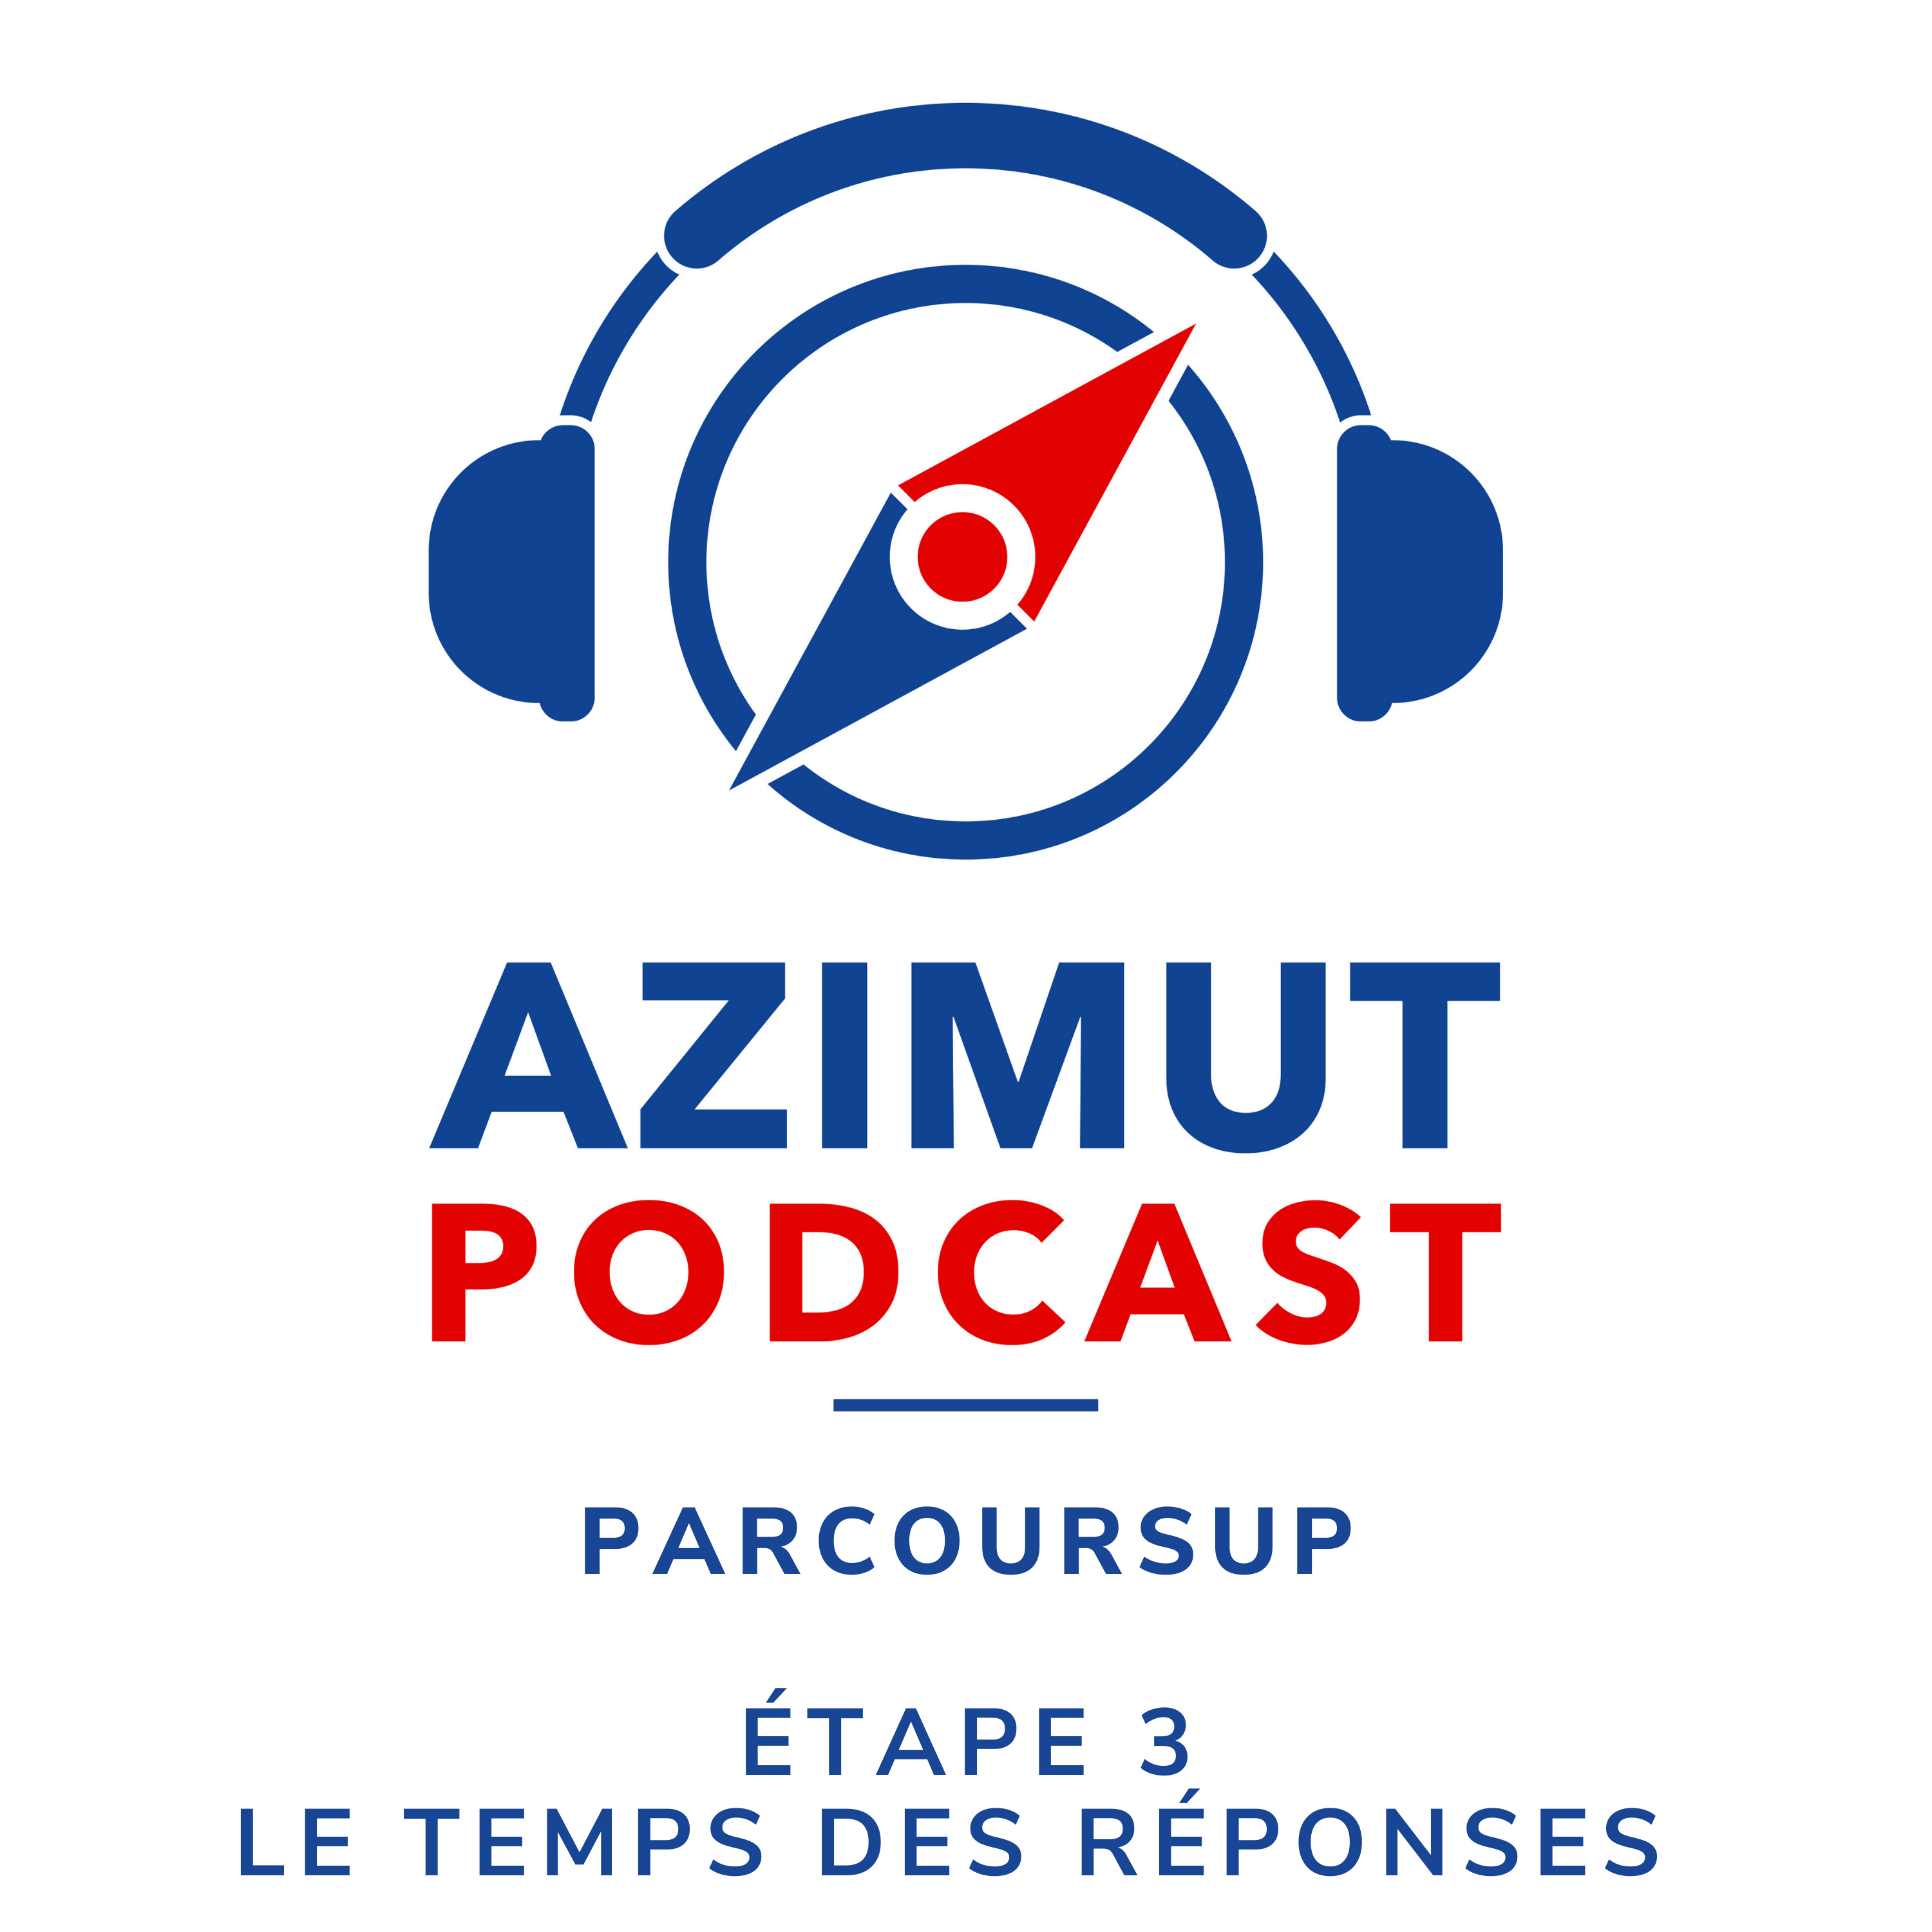 PARCOURSUP ETAPE 3 LE TEMPS DES REPONSES